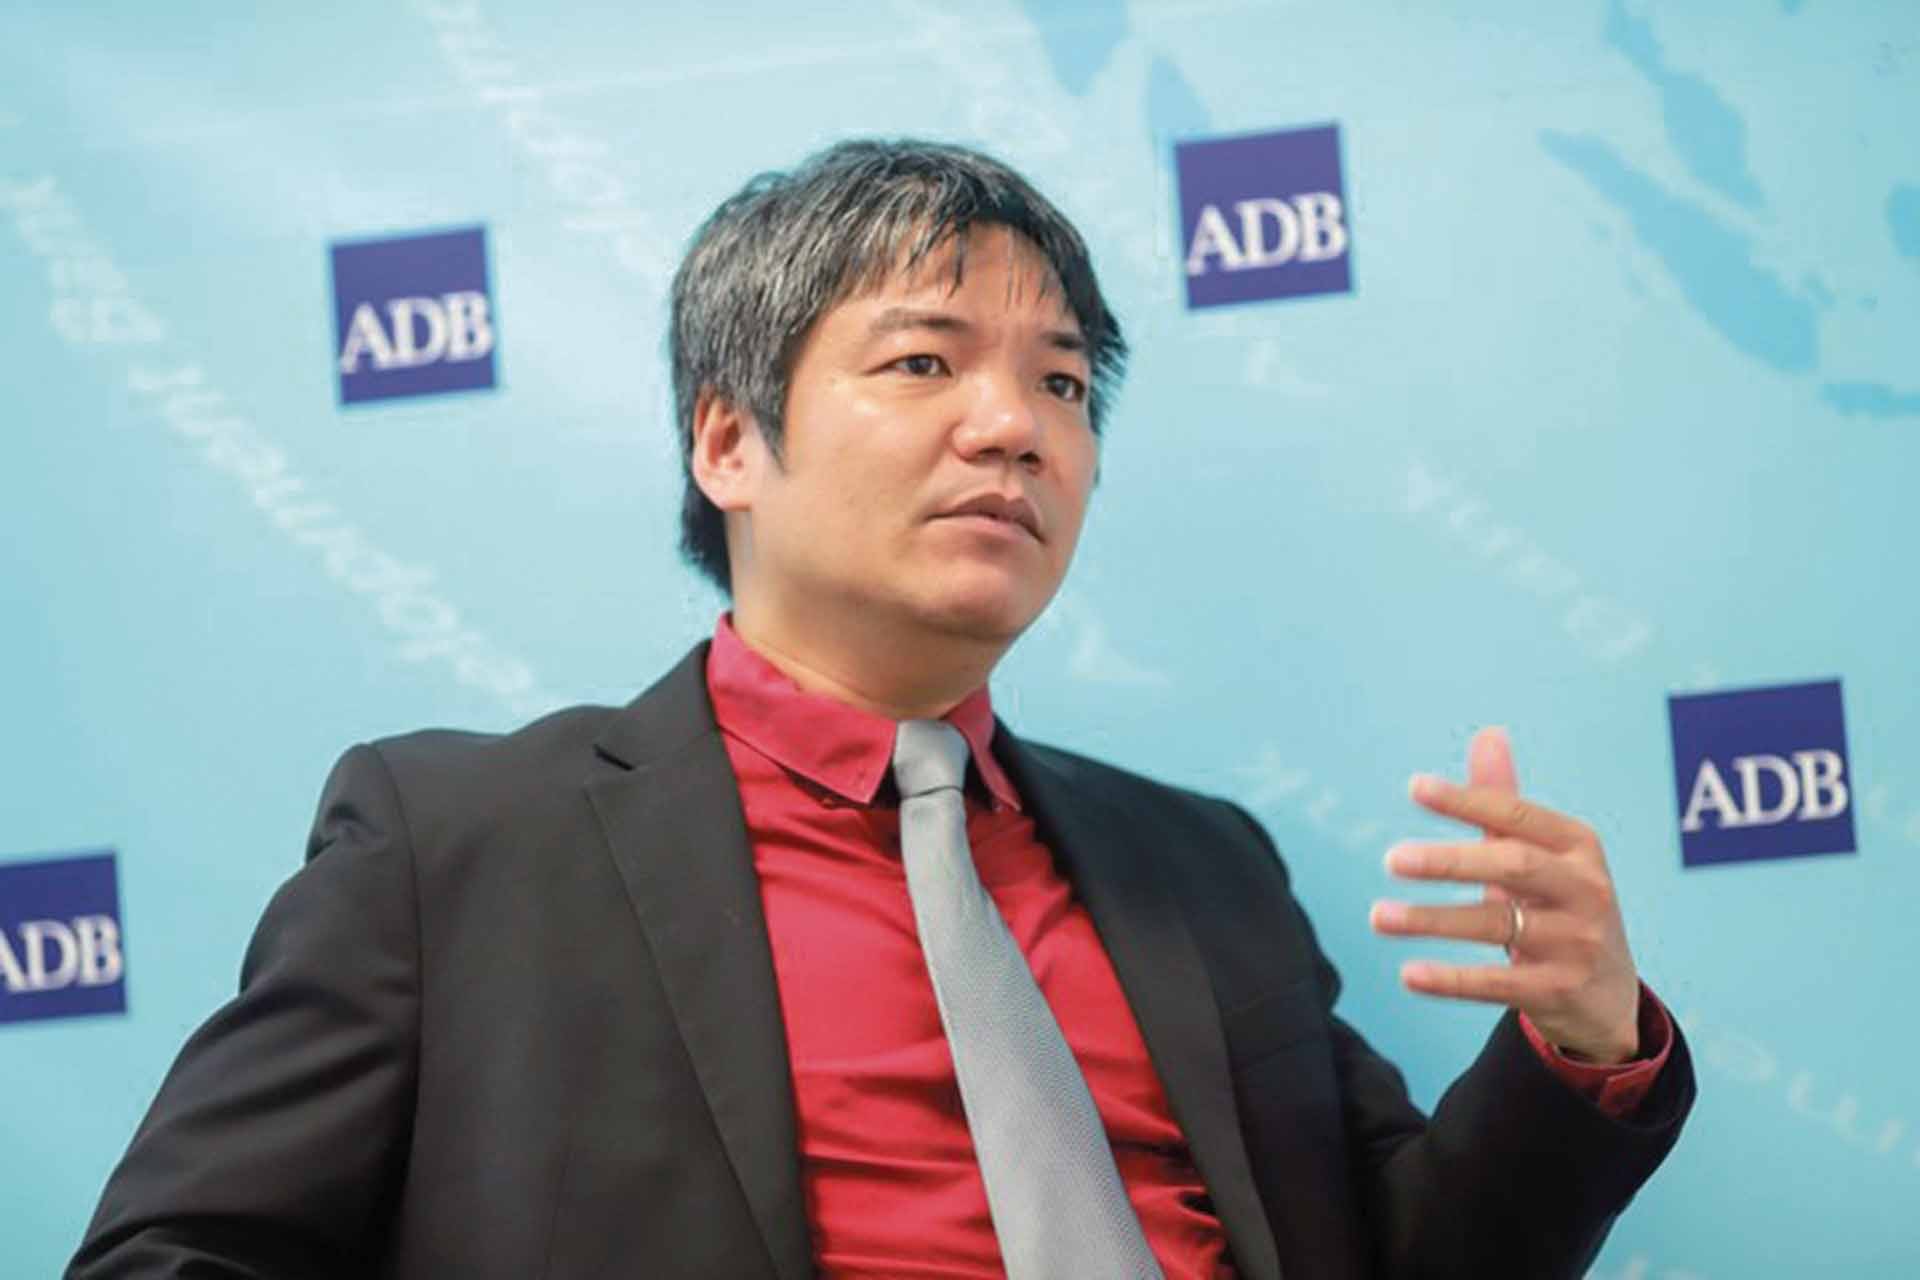 Ông Nguyễn Bá Hùng, chuyên gia kinh tế trưởng Ngân hàng ADB tại Việt Nam.